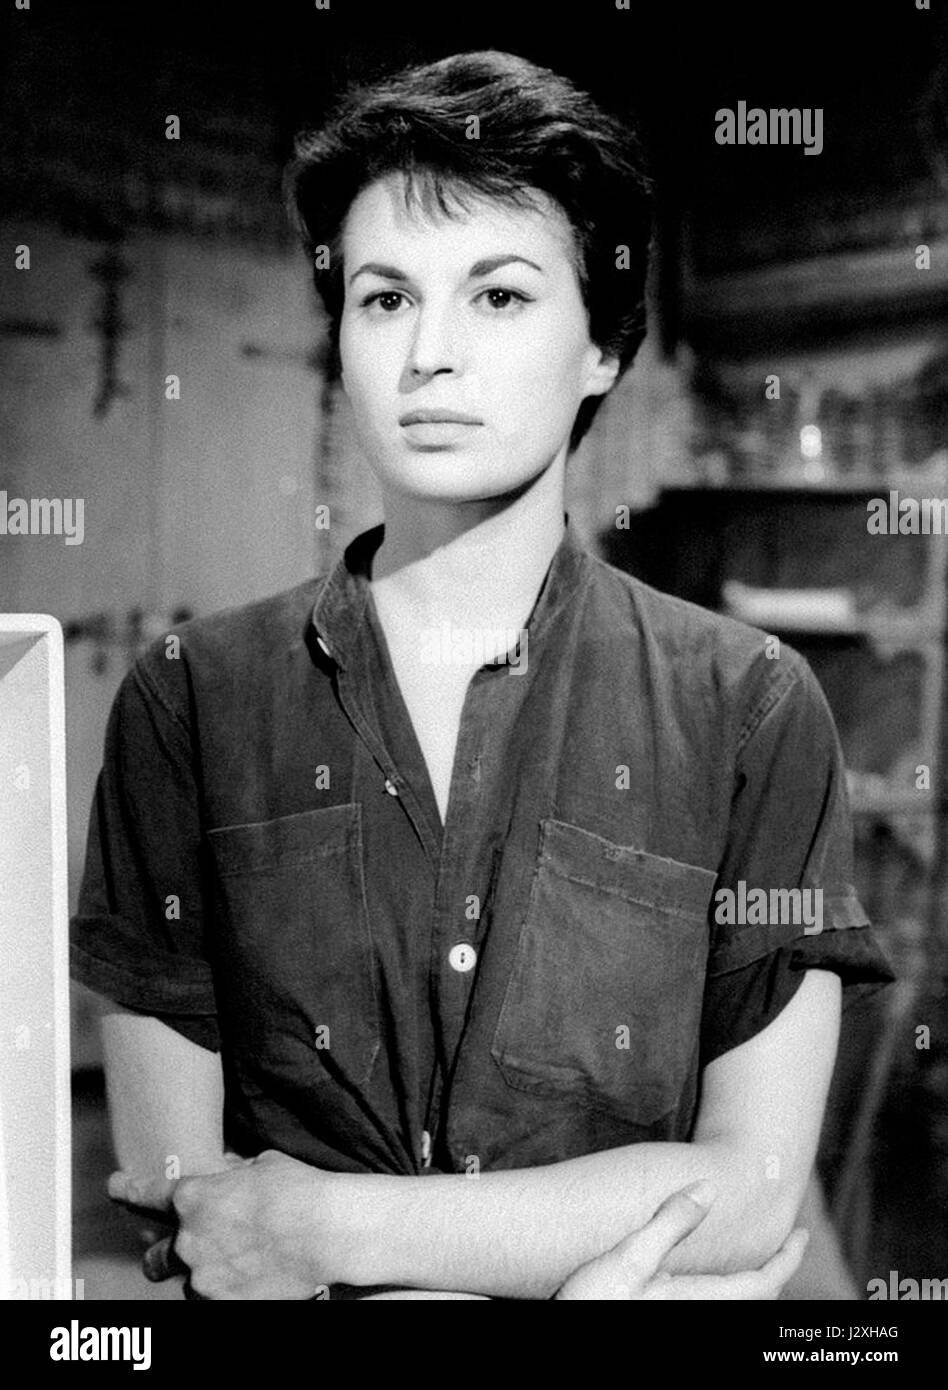 Silvana Mangano 1956 Stock Photo